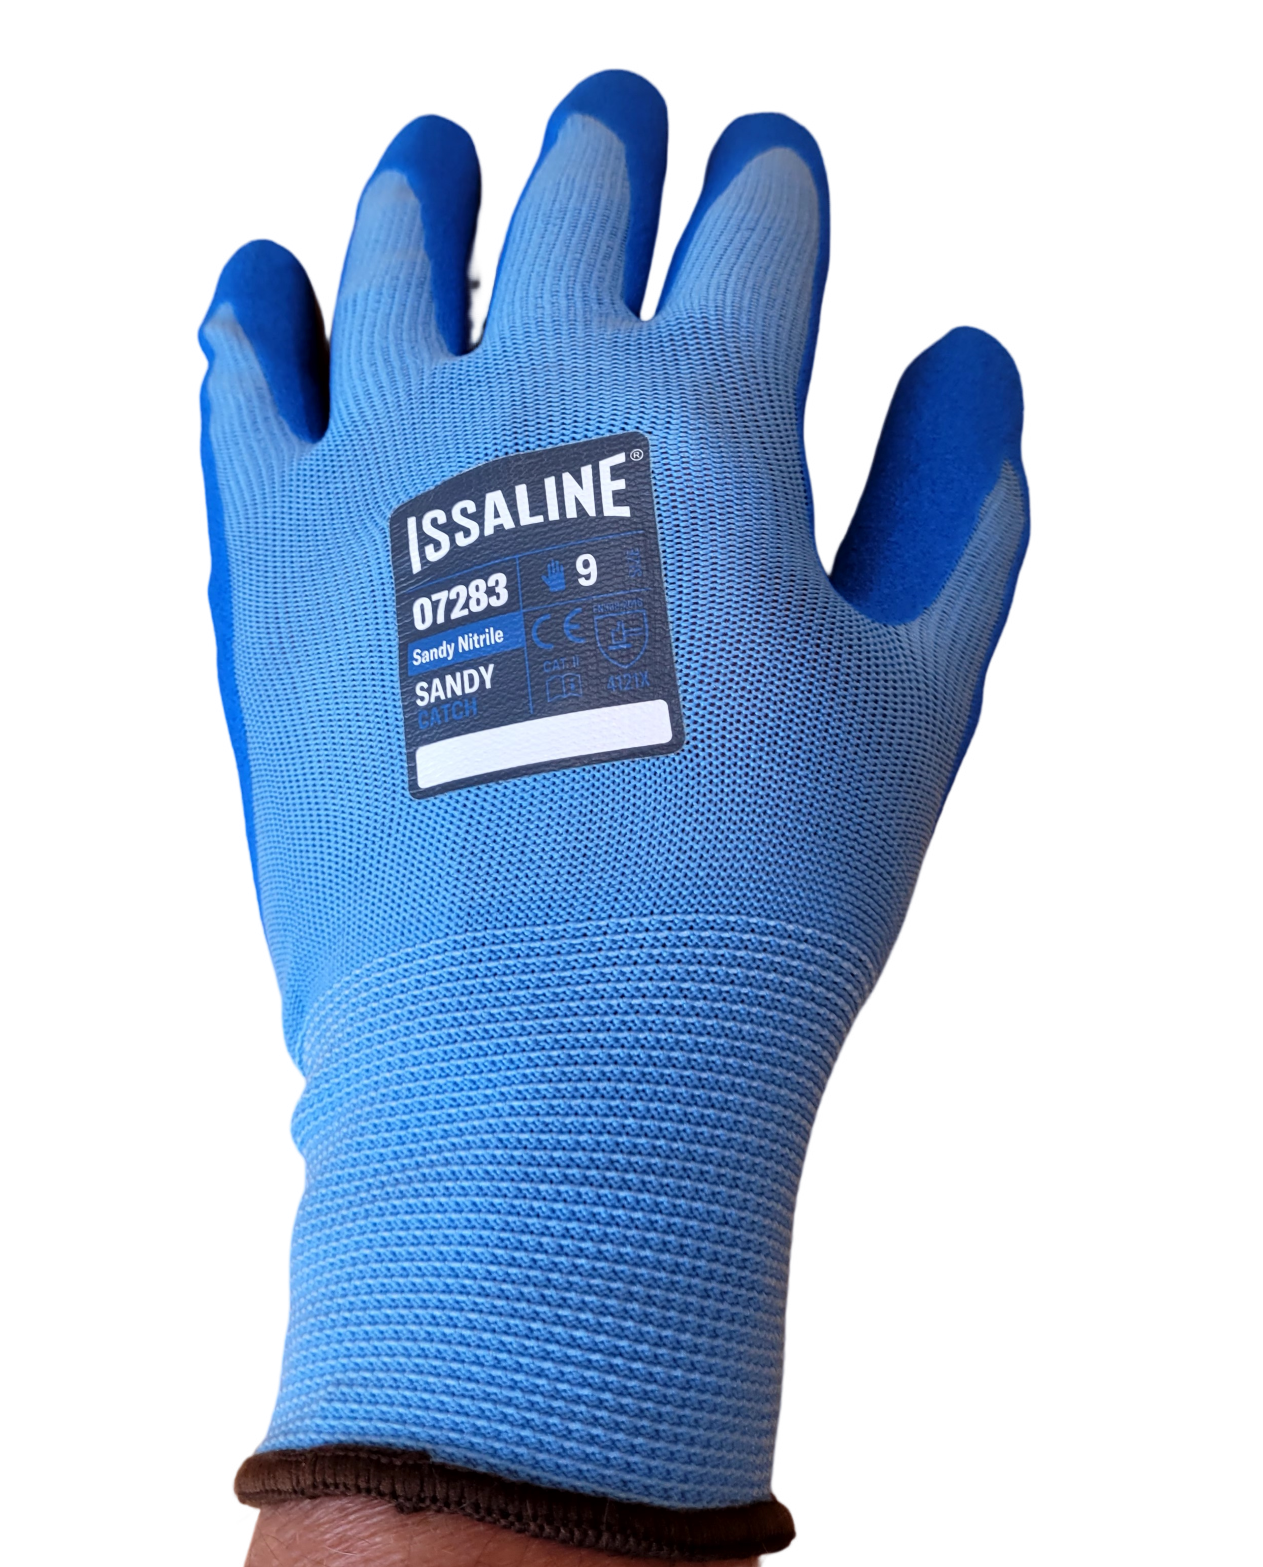 gants-de-travail-carrelage-07283-bleu-taille-9